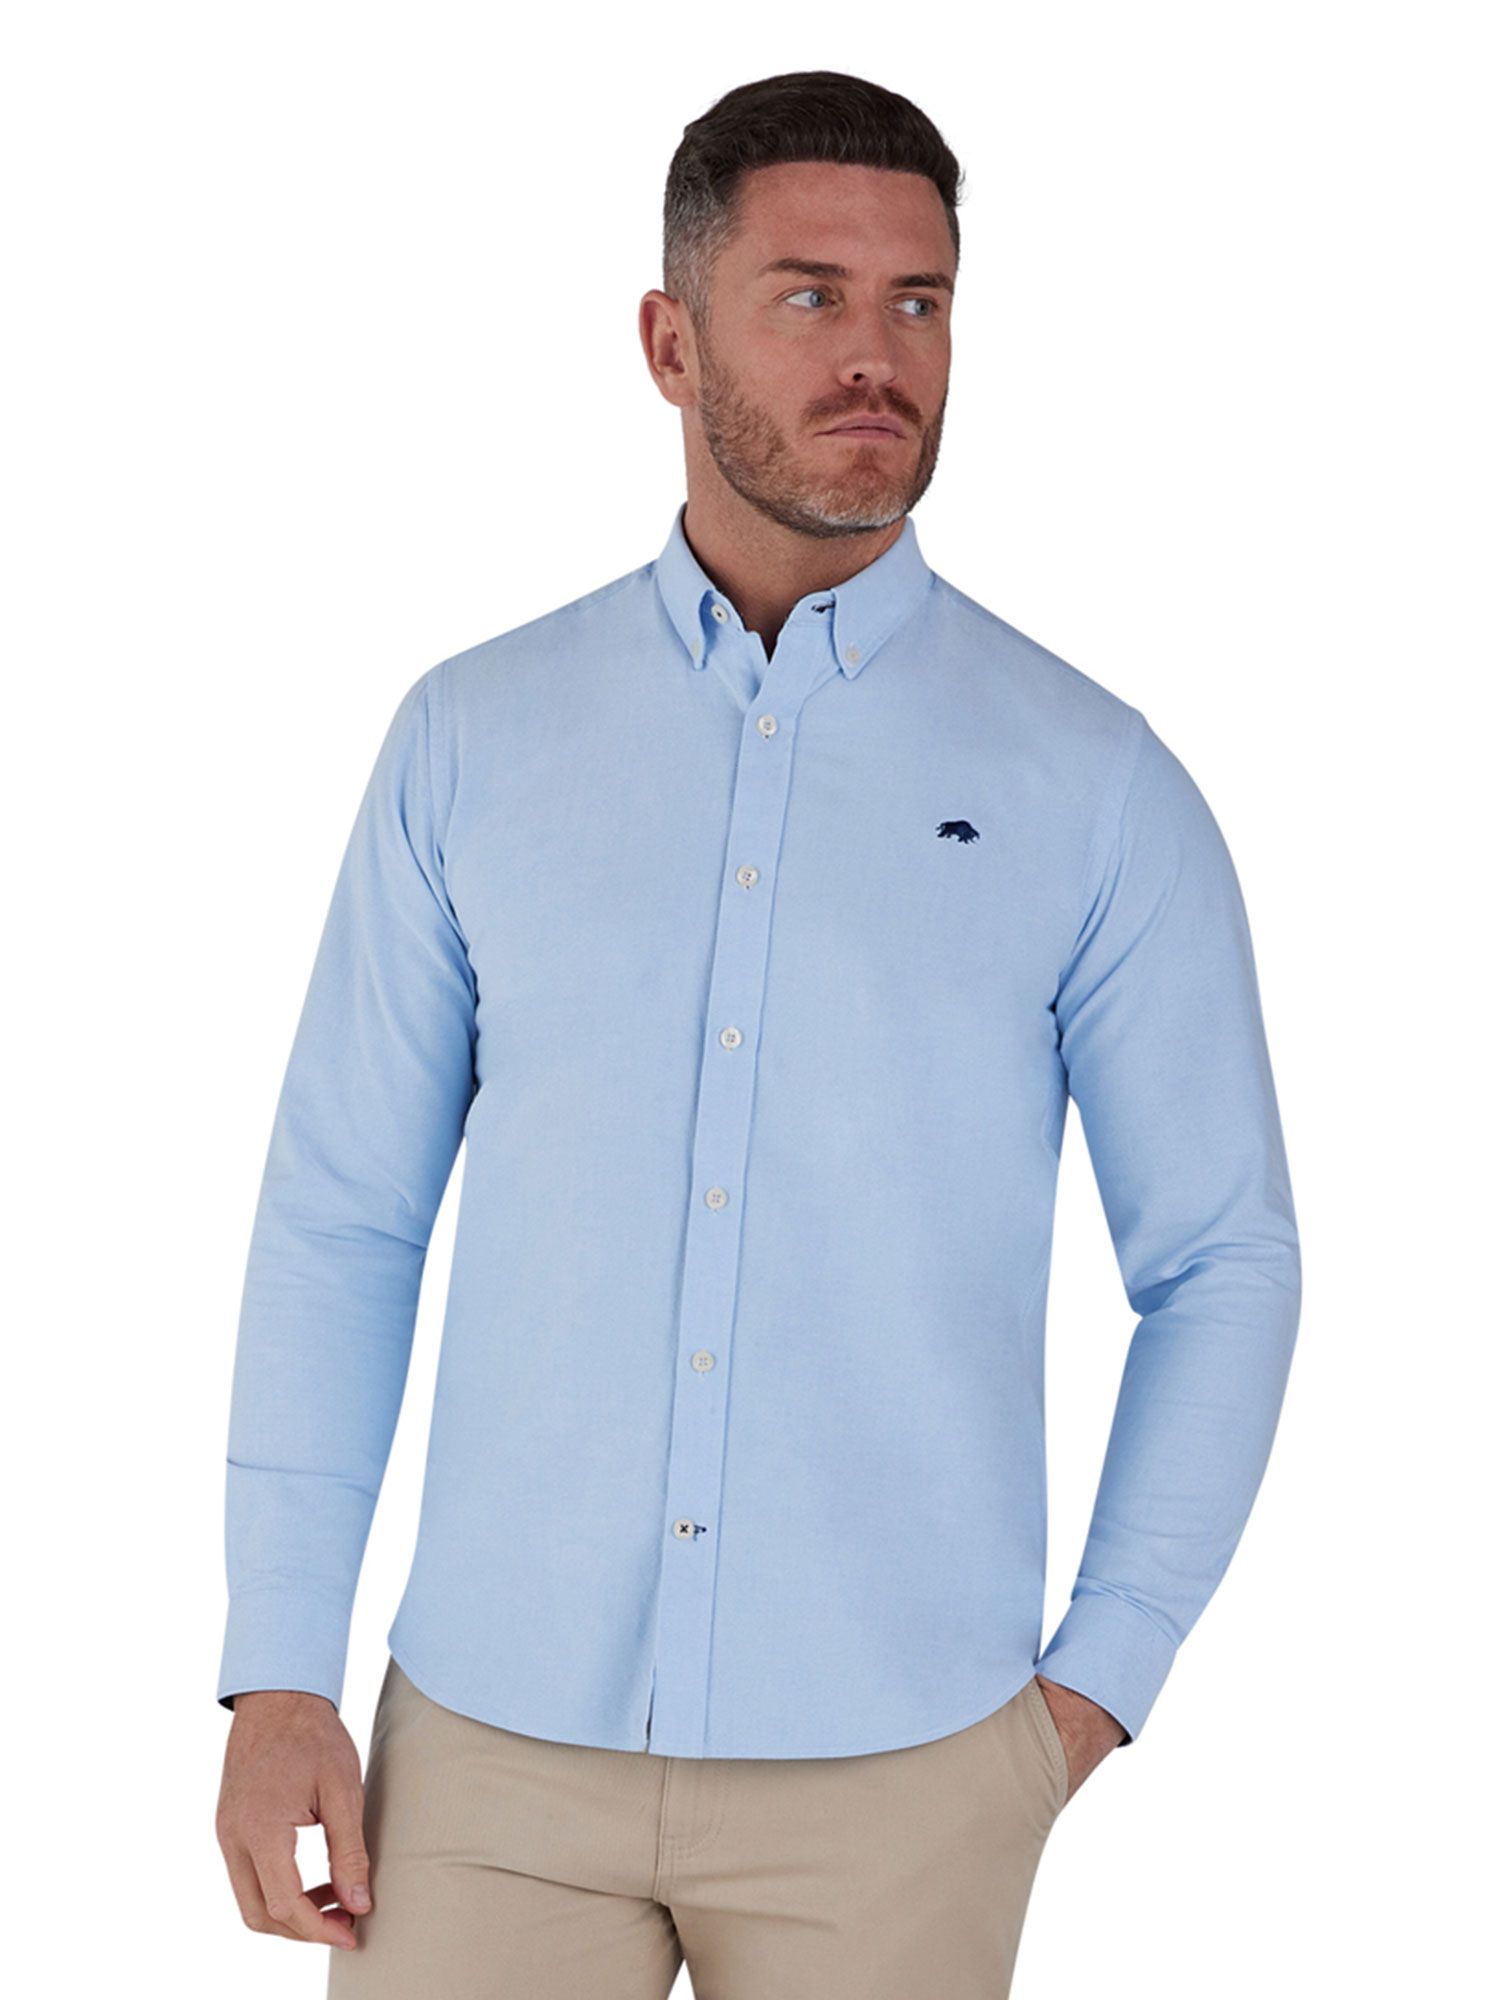 Классическая оксфордская рубашка Raging Bull, голубое небо